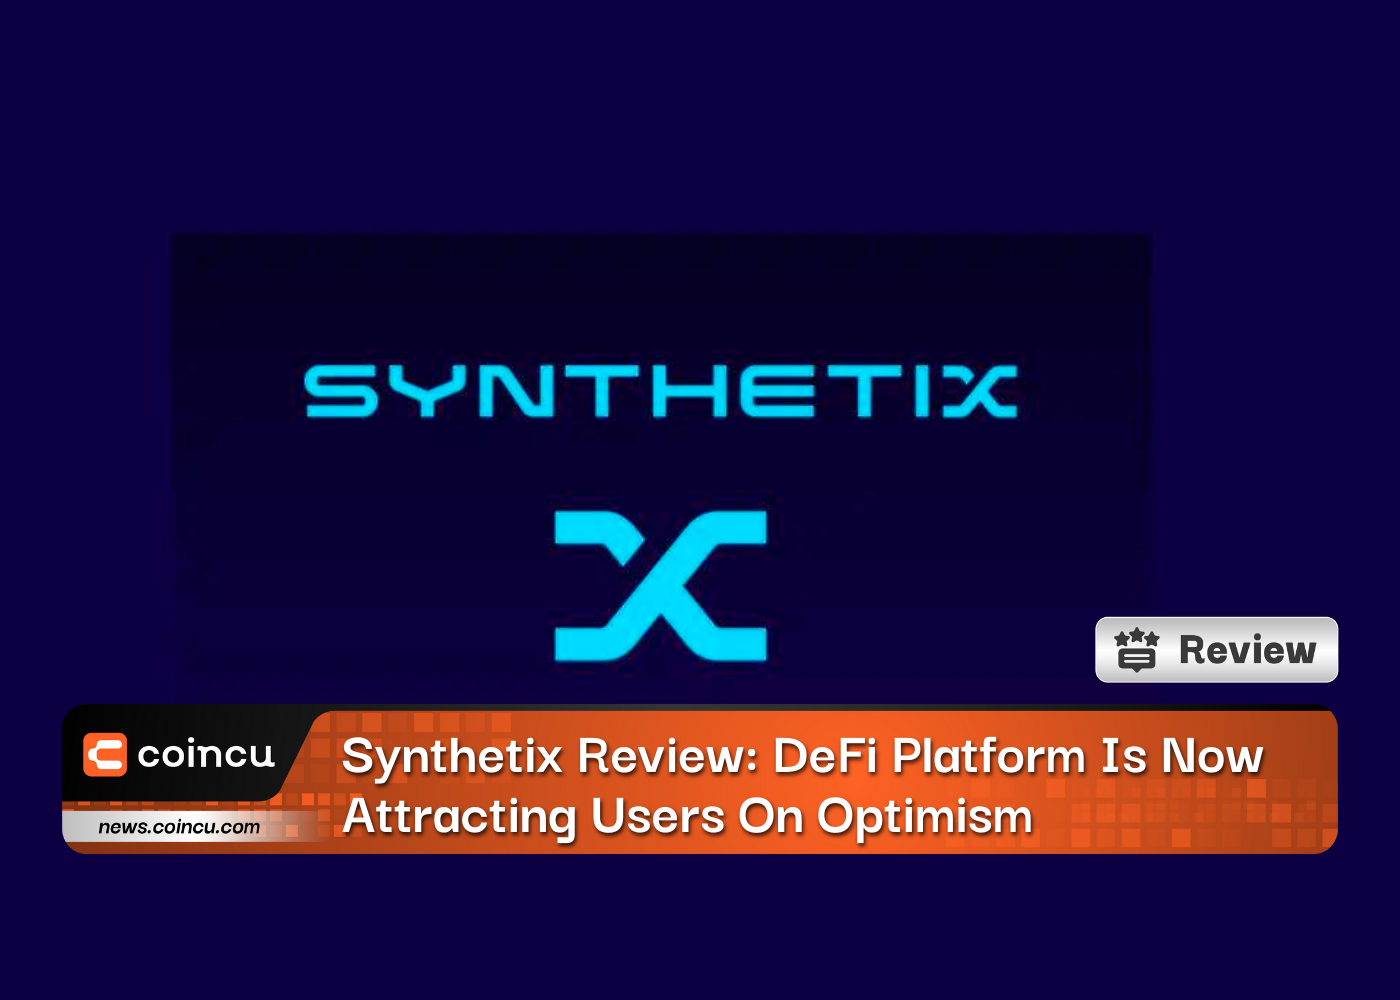 Đánh giá Synthetix: Nền tảng DeFi hiện đang thu hút người dùng nhờ sự lạc quan